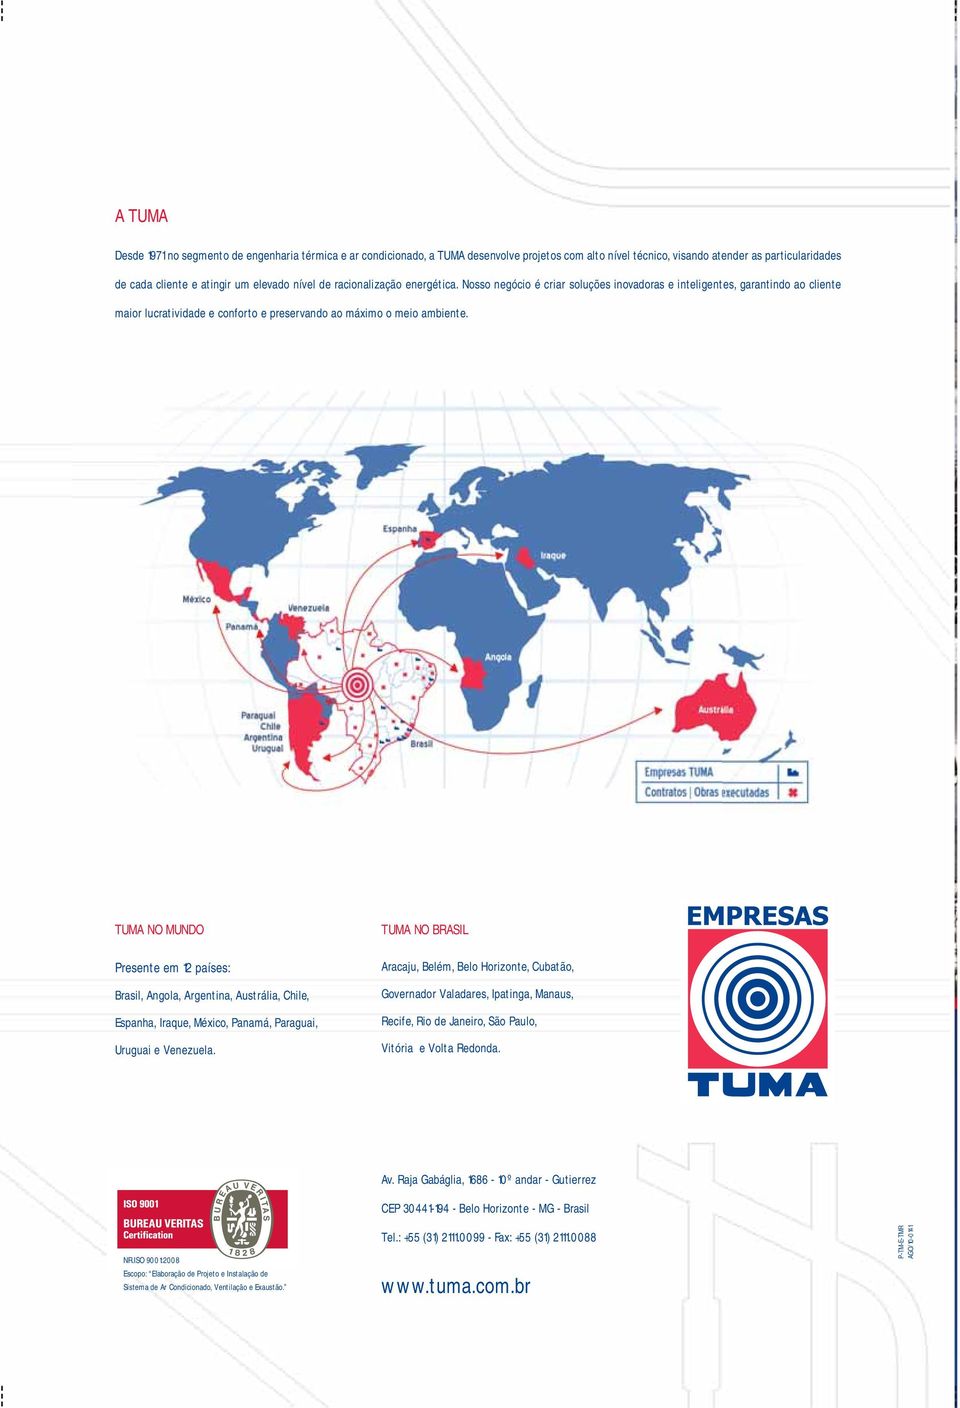 TUMA NO MUNDO Presente em 12 países: Brasil, Angola, Argentina, Austrália, Chile, Espanha, Iraque, México, Panamá, Paraguai, Uruguai e Venezuela.